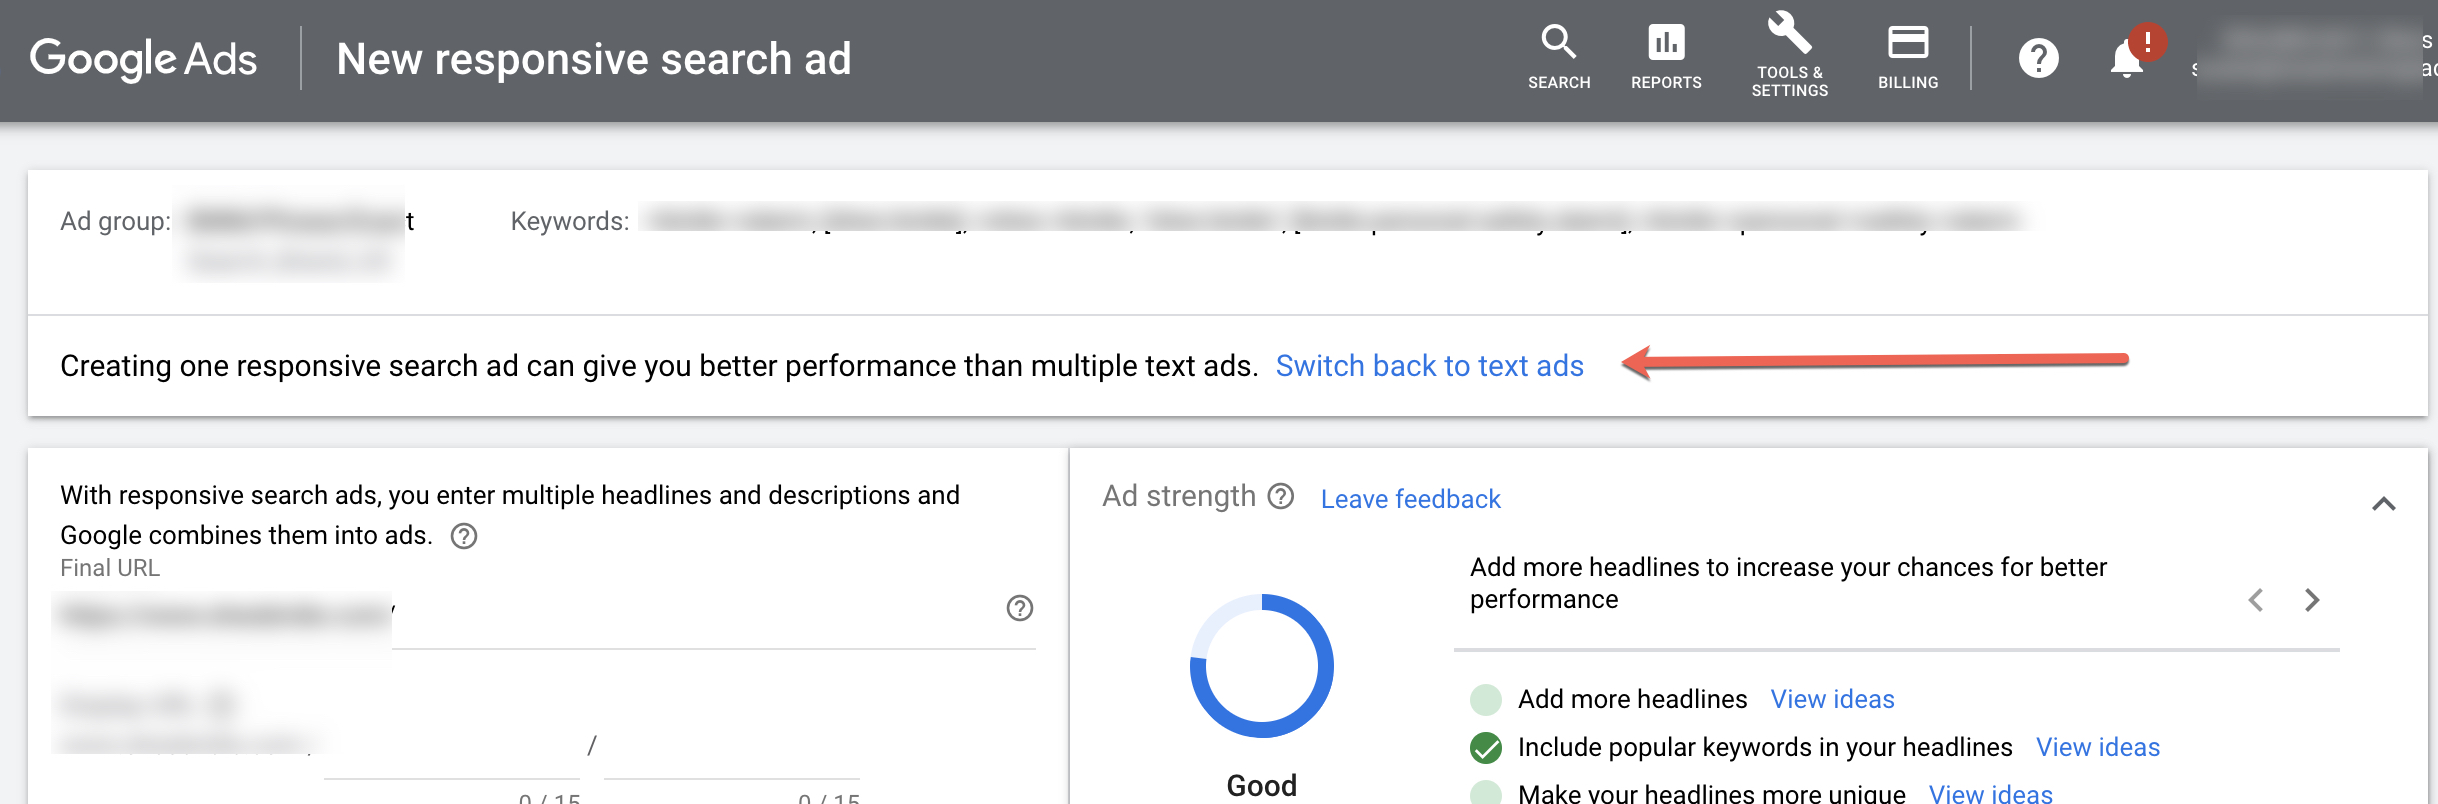 تبلیغات جستجوی پاسخگو اکنون نوع پیش فرض Google Ads است